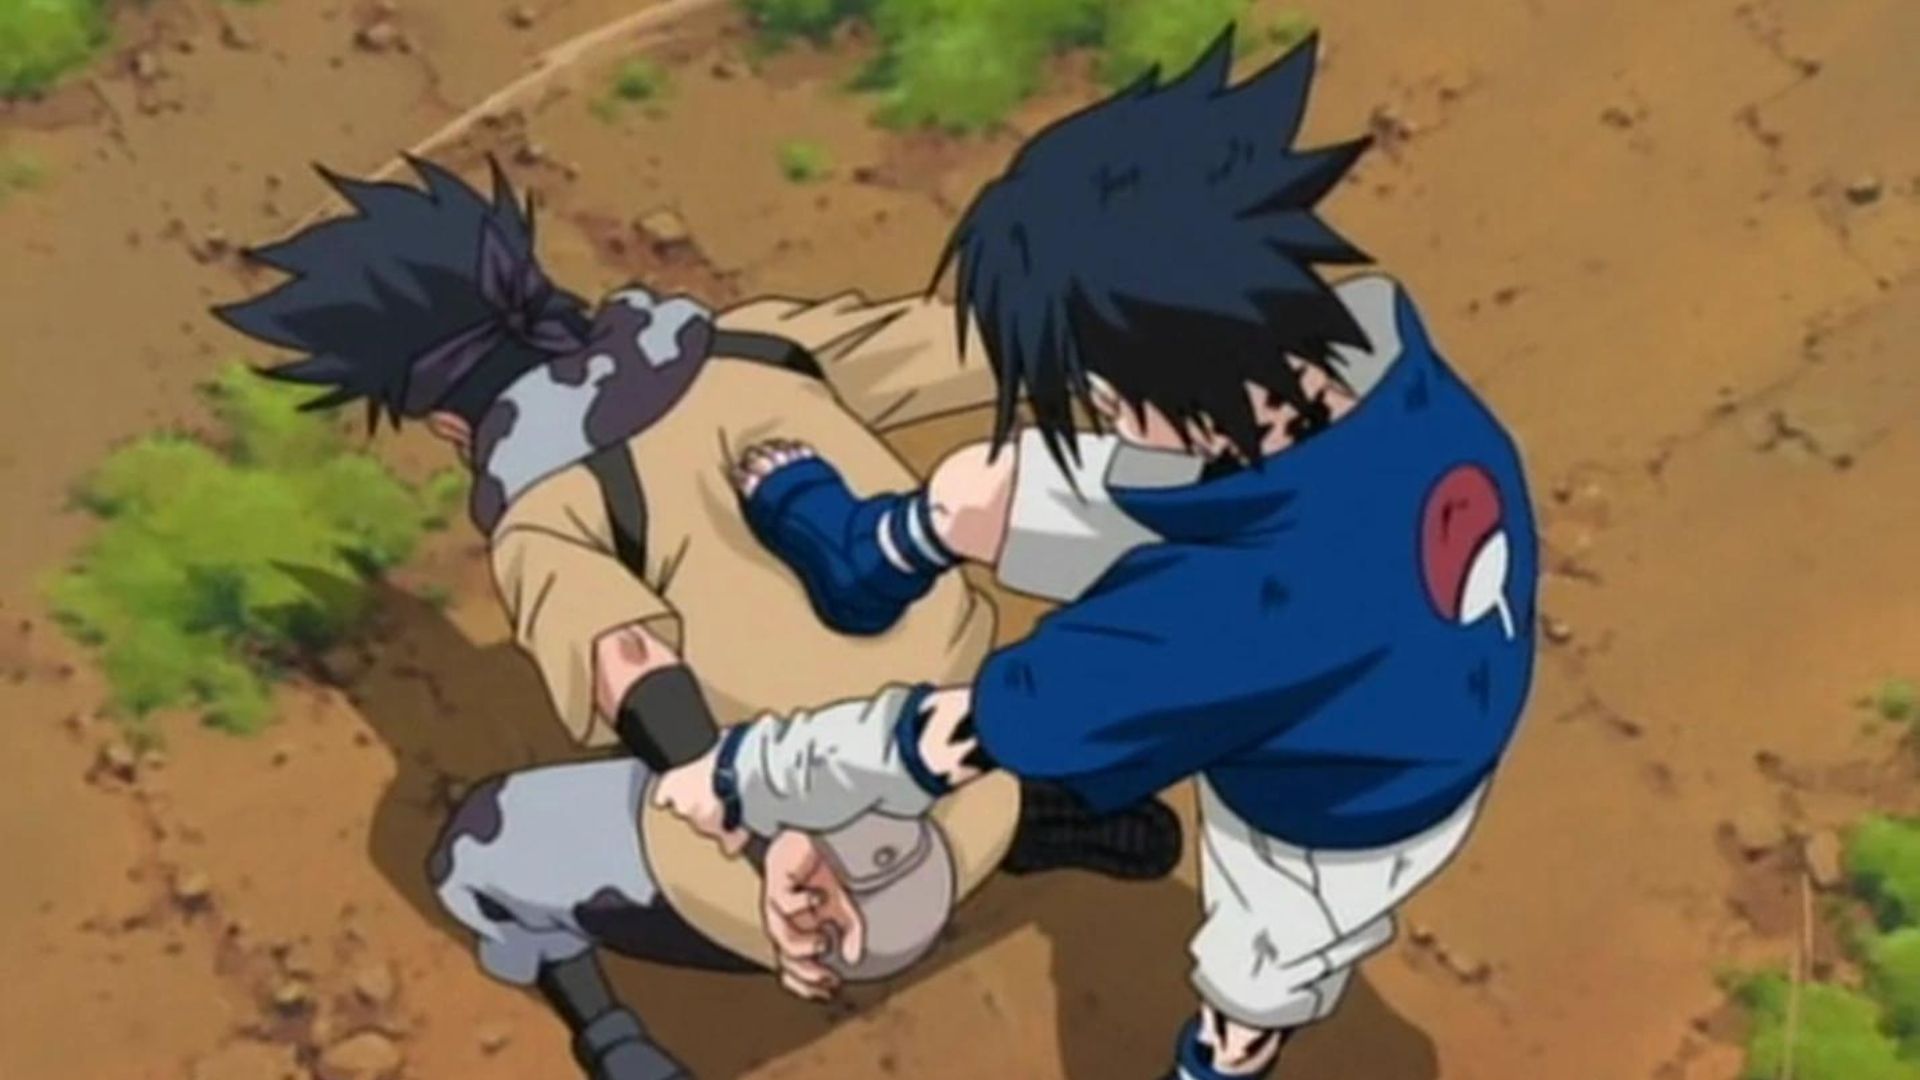 Sasuke breaking arms